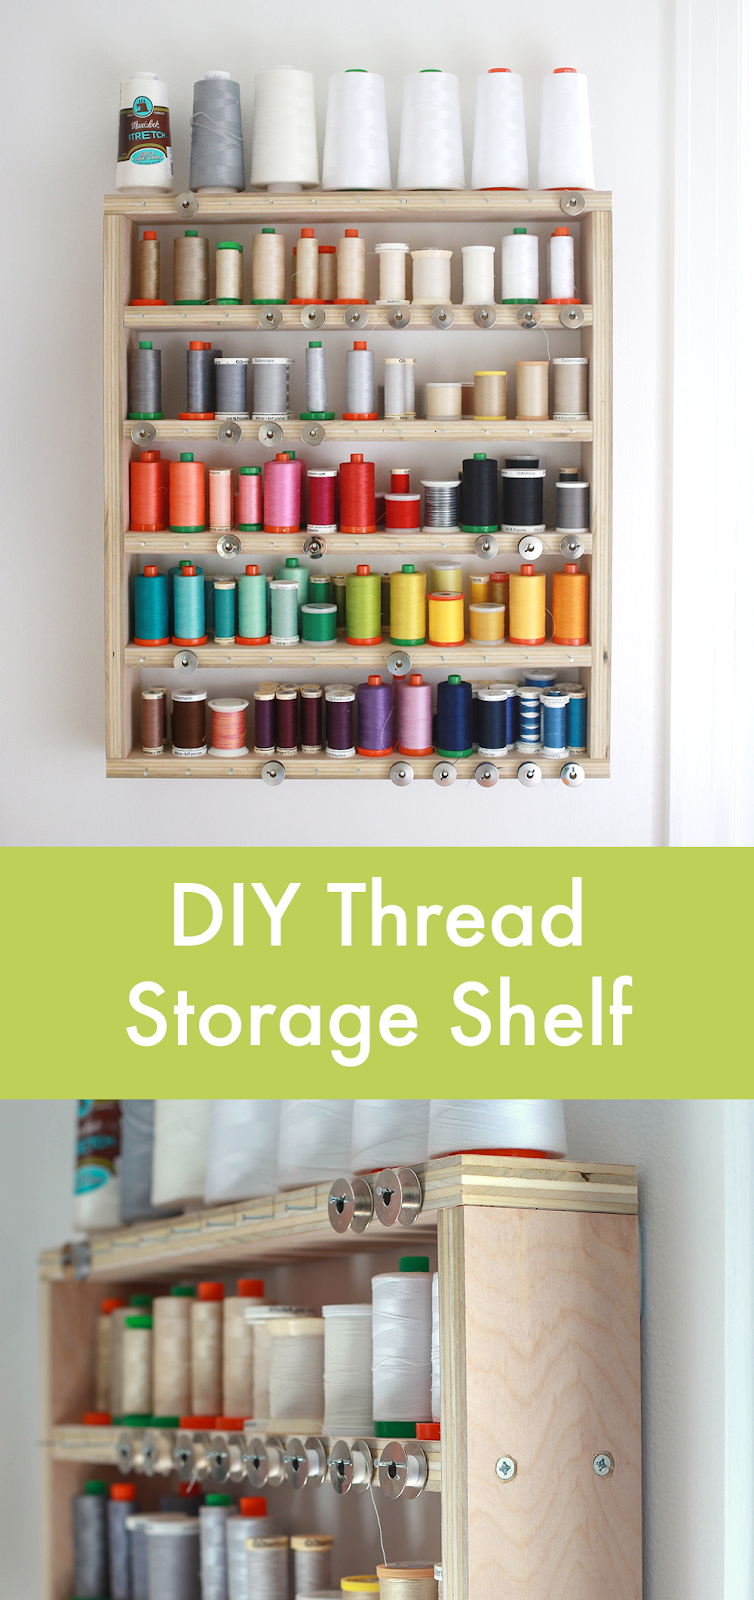 In Color Order: My DIY Thread Storage Shelf